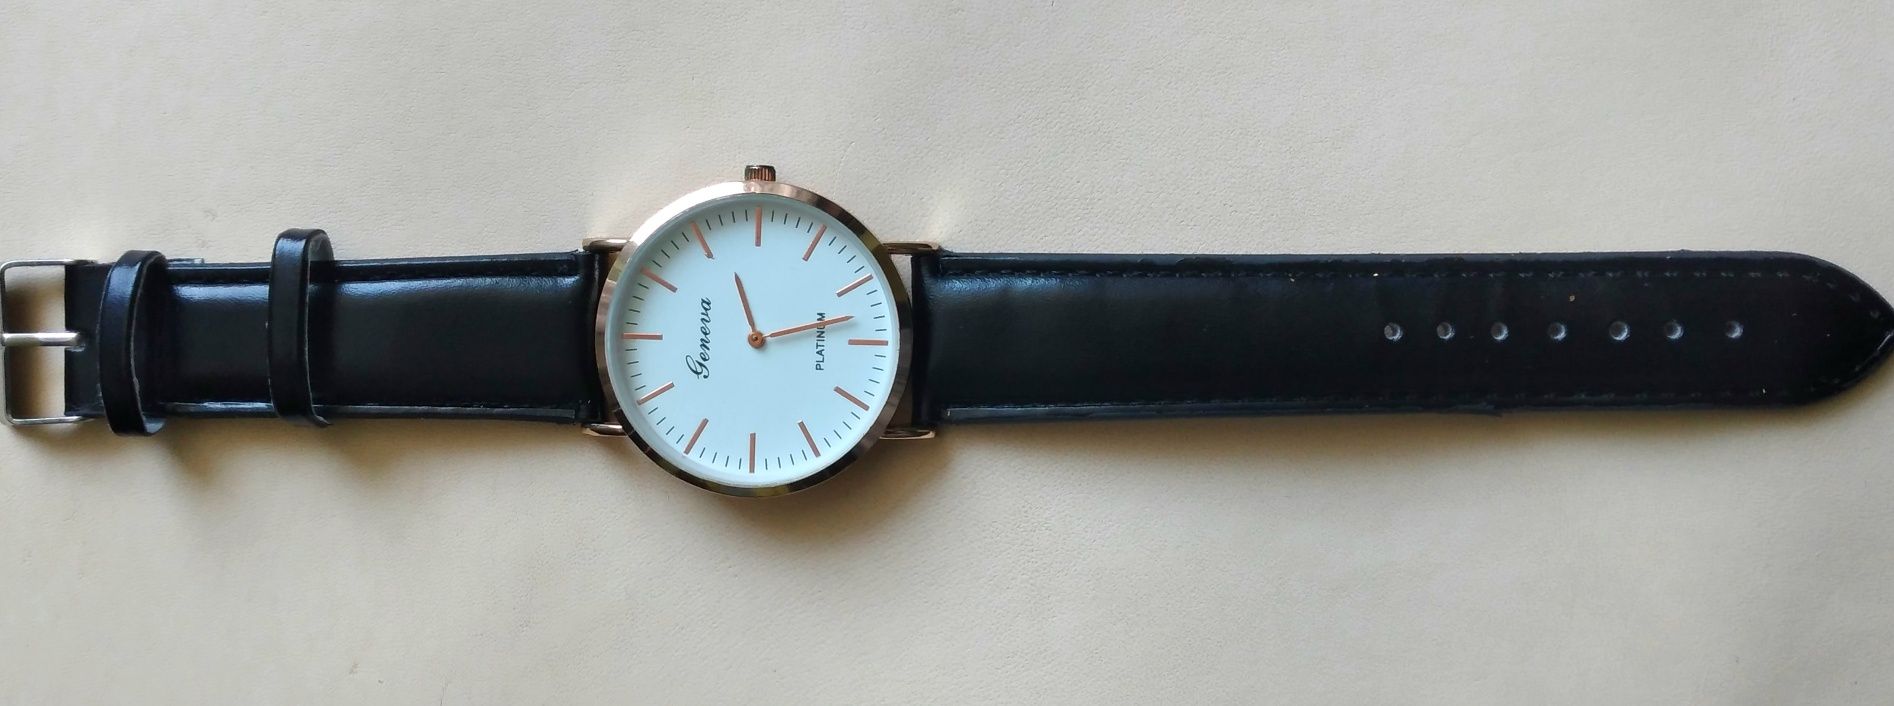 Zegarek Geneva Platinum Nowy  i kompas!